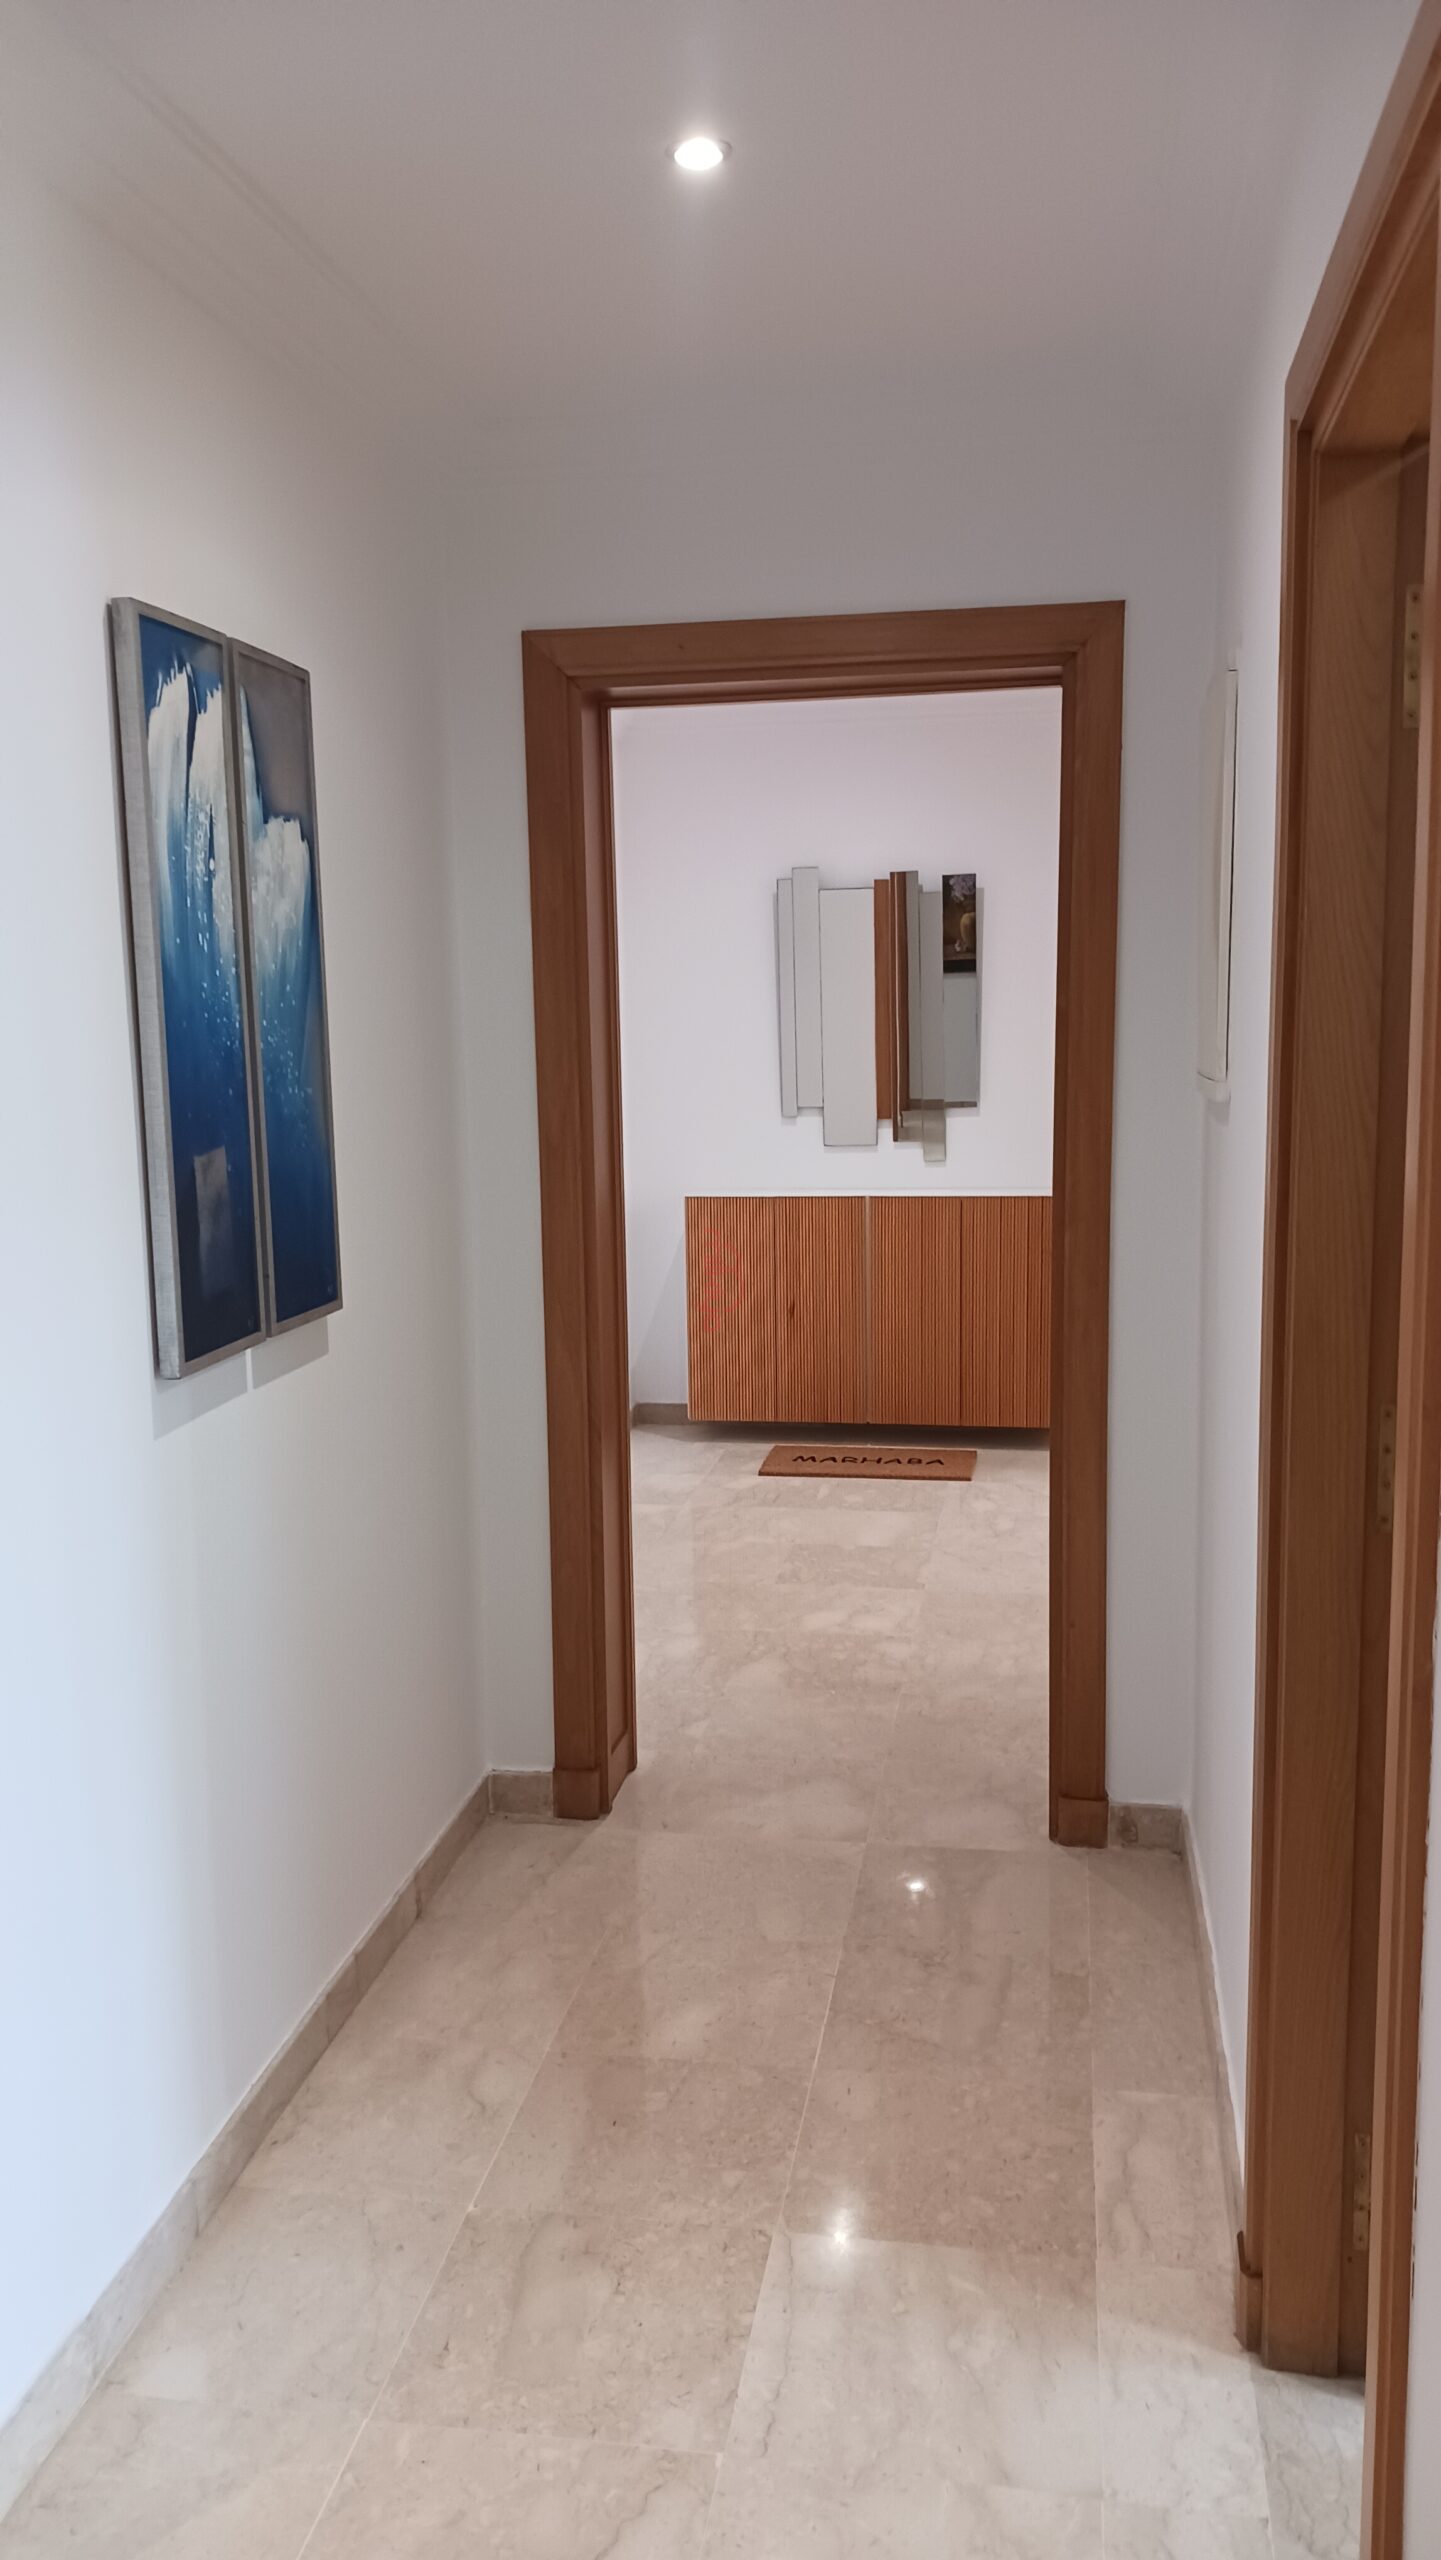 563 - Location Appartement 120 m² à Casablanca